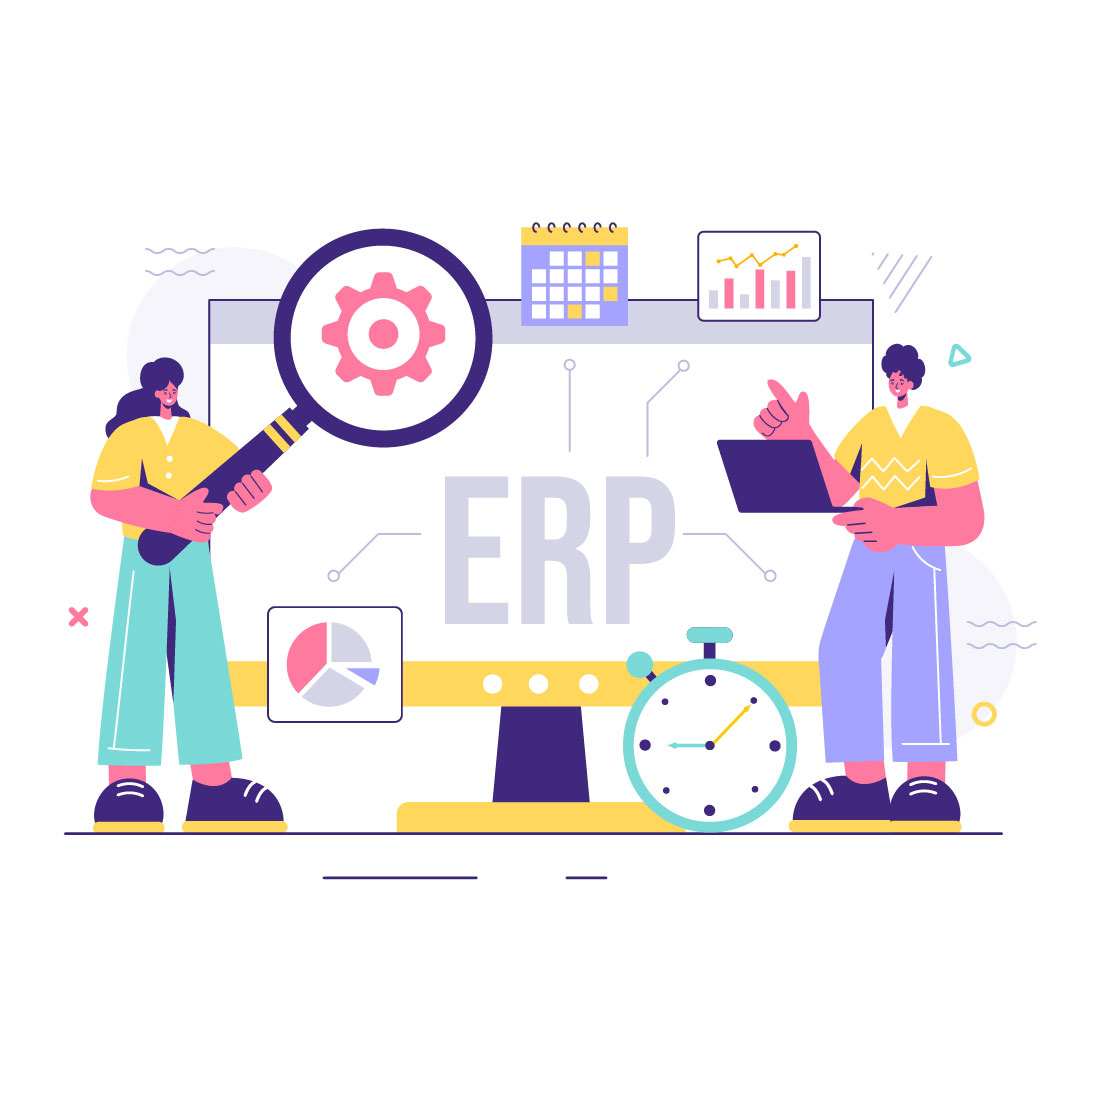 10 ERP Enterprise Resource Planning System Illustration cover image.